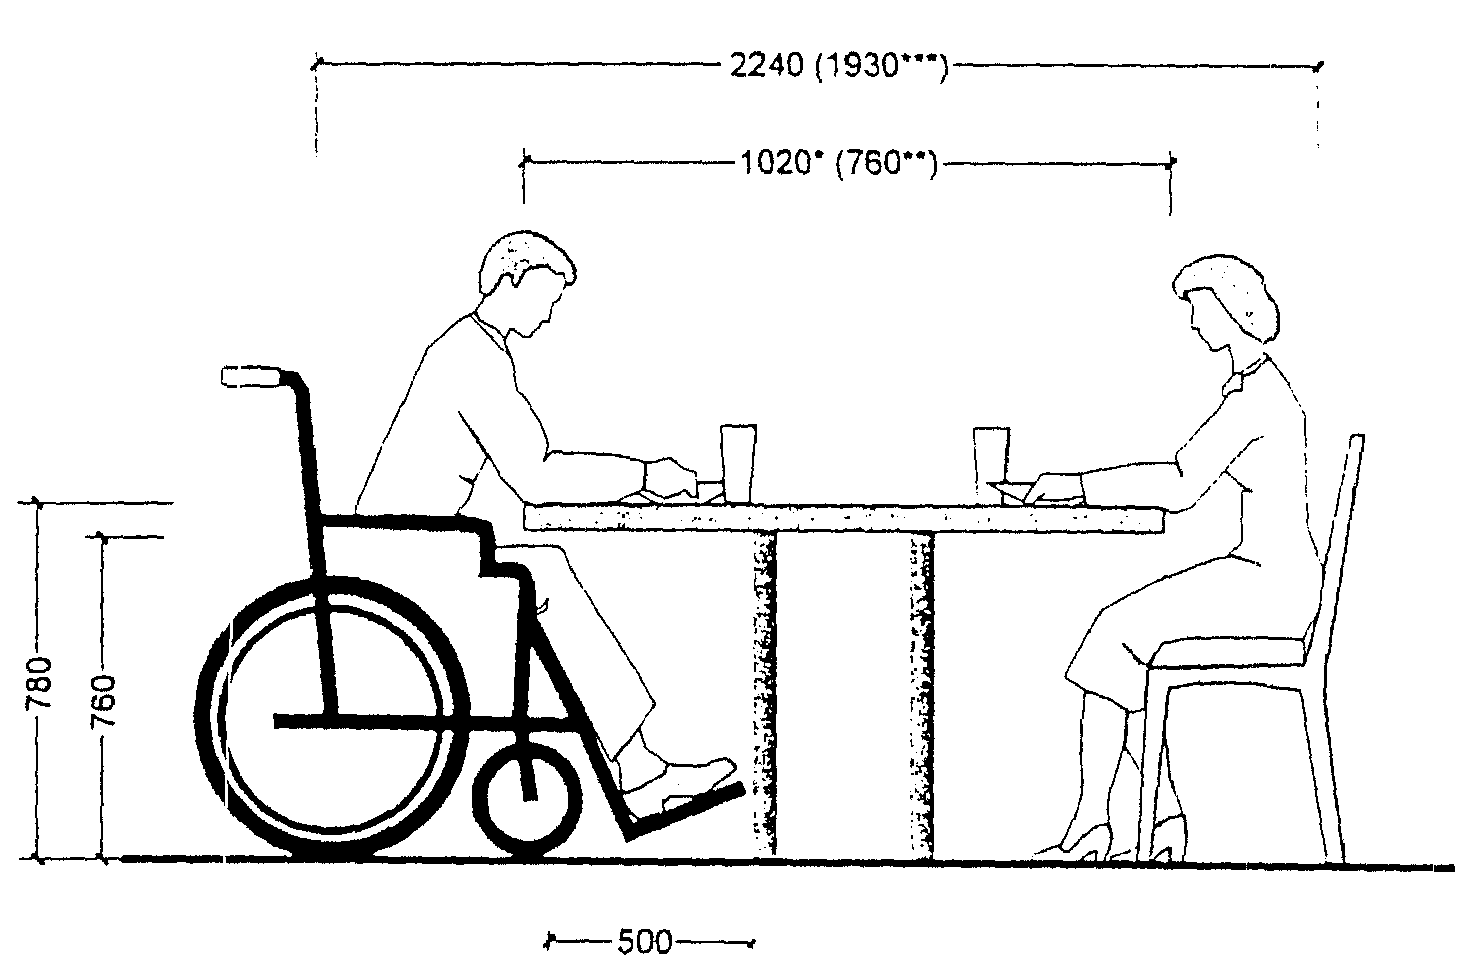 нормы высоты стула и стола для детей